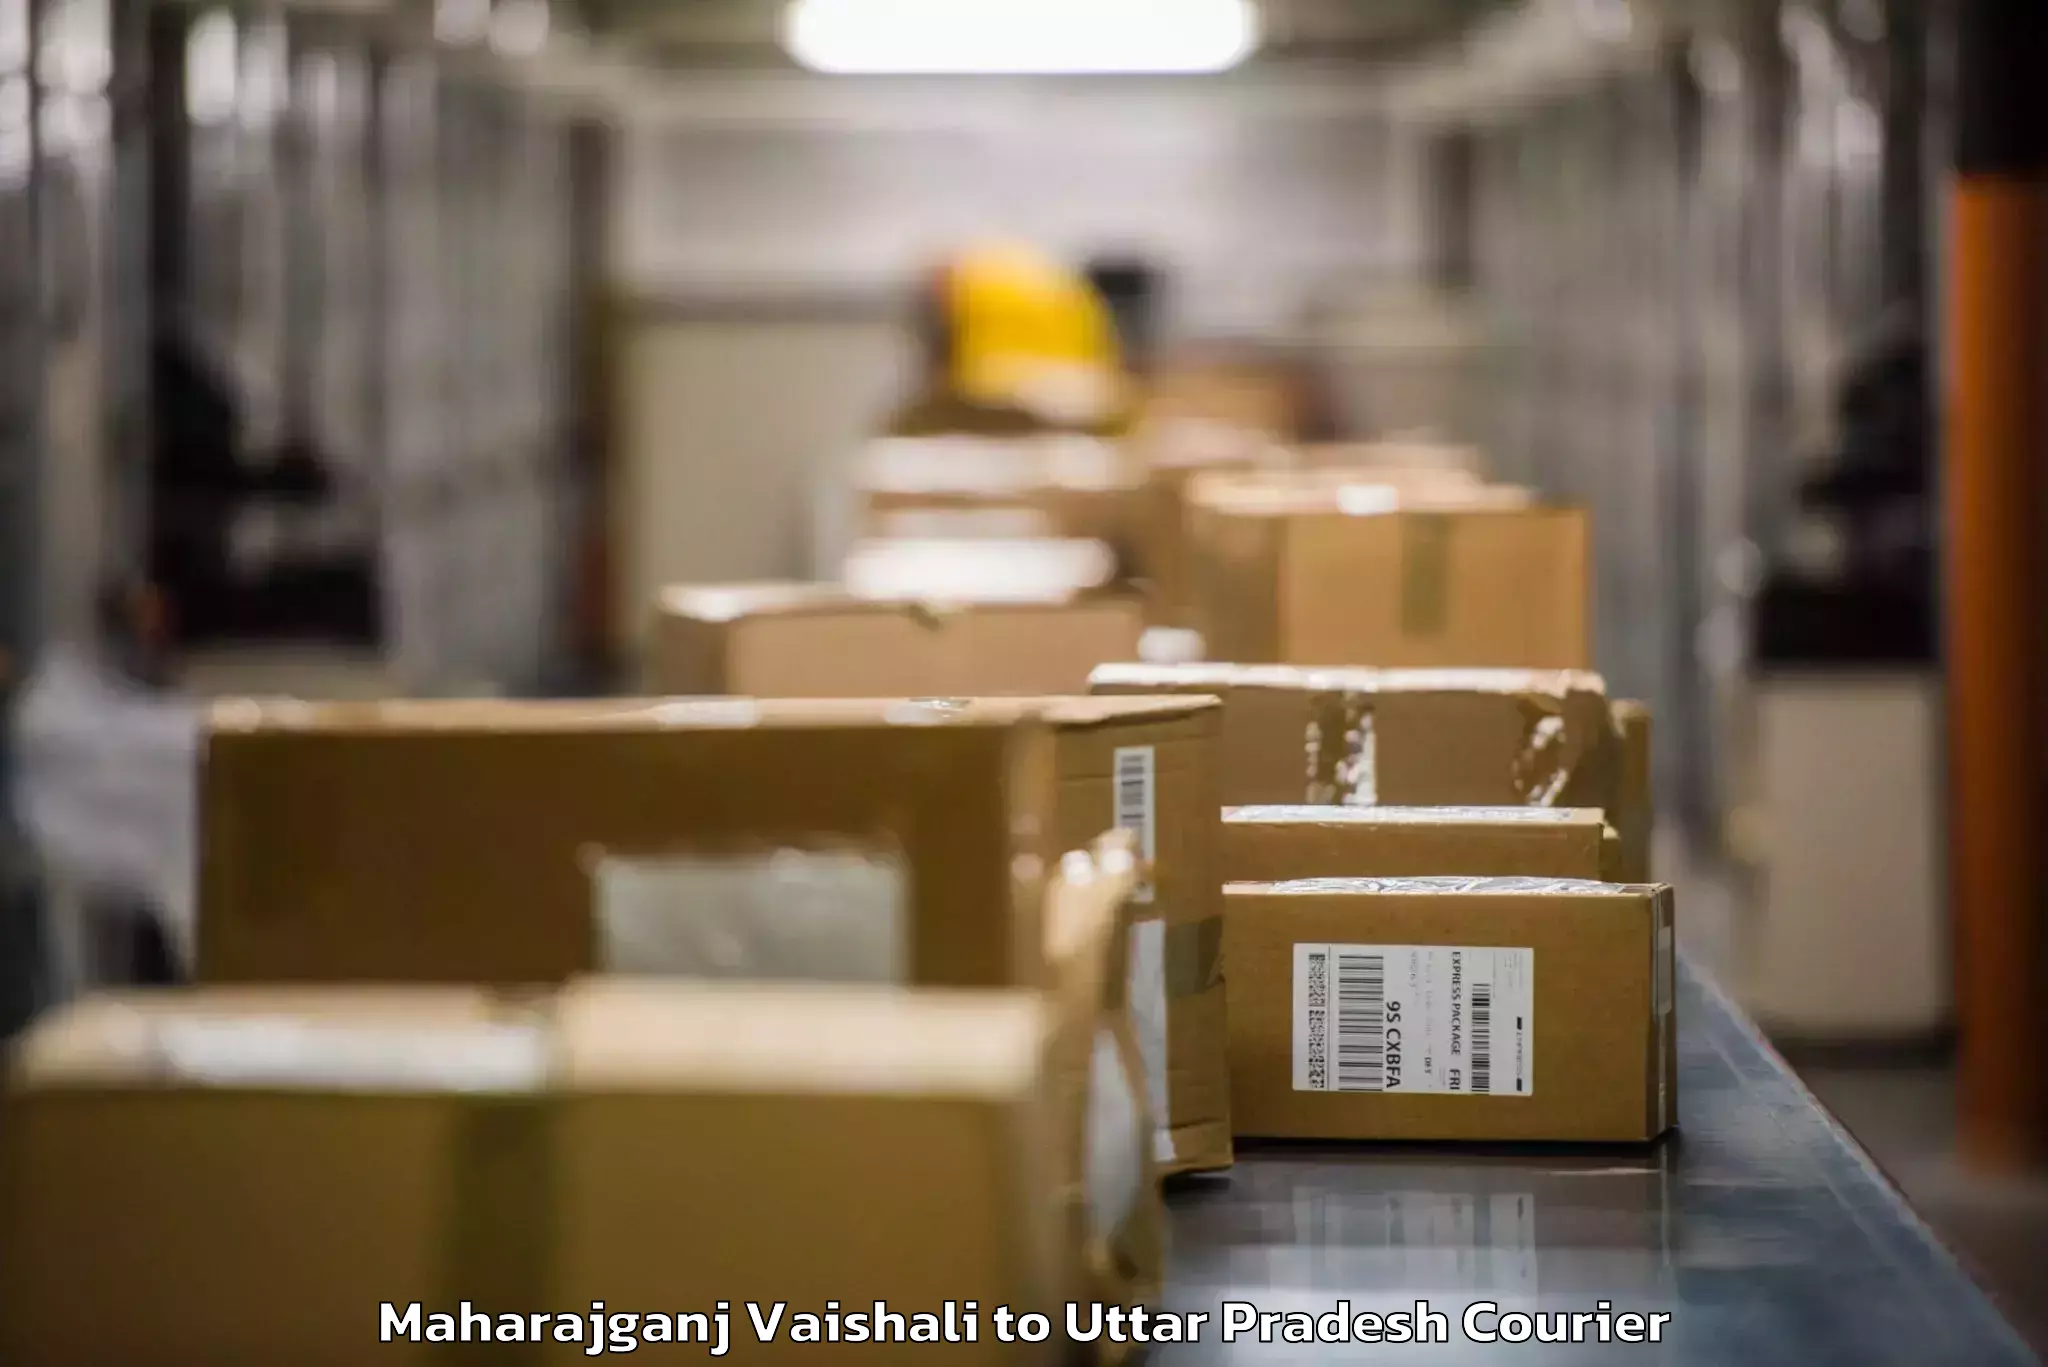 Baggage shipping logistics in Maharajganj Vaishali to Aligarh Muslim University